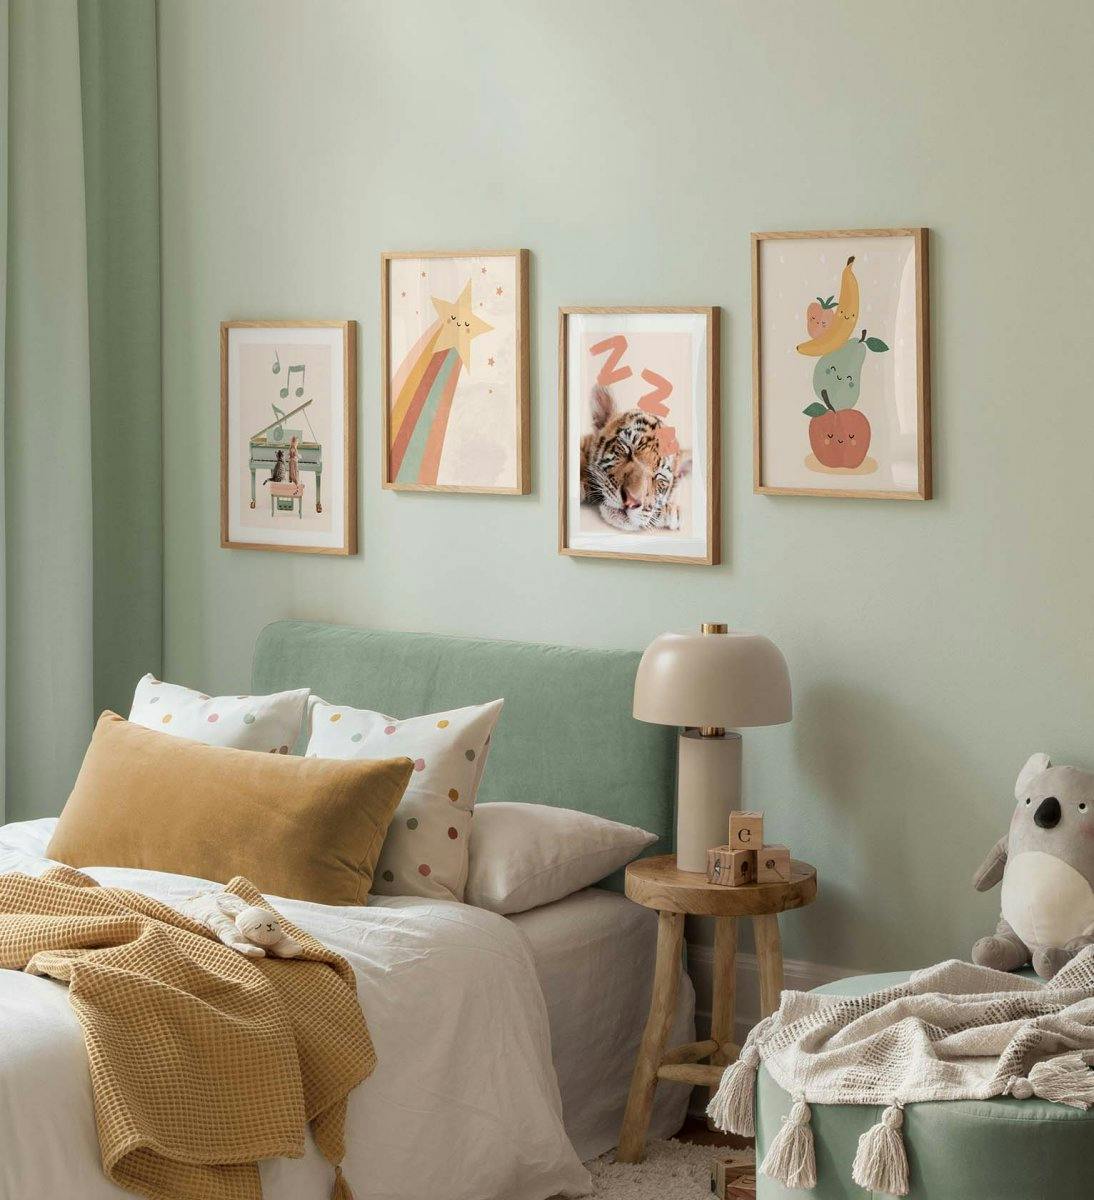 جدار معرض لغرفة الأطفال مع مطبوعات سعيدة لرسوم توضيحية للفواكه وملصقات حيوانات بألوان الباستيل مع إطارات من خشب البلوط